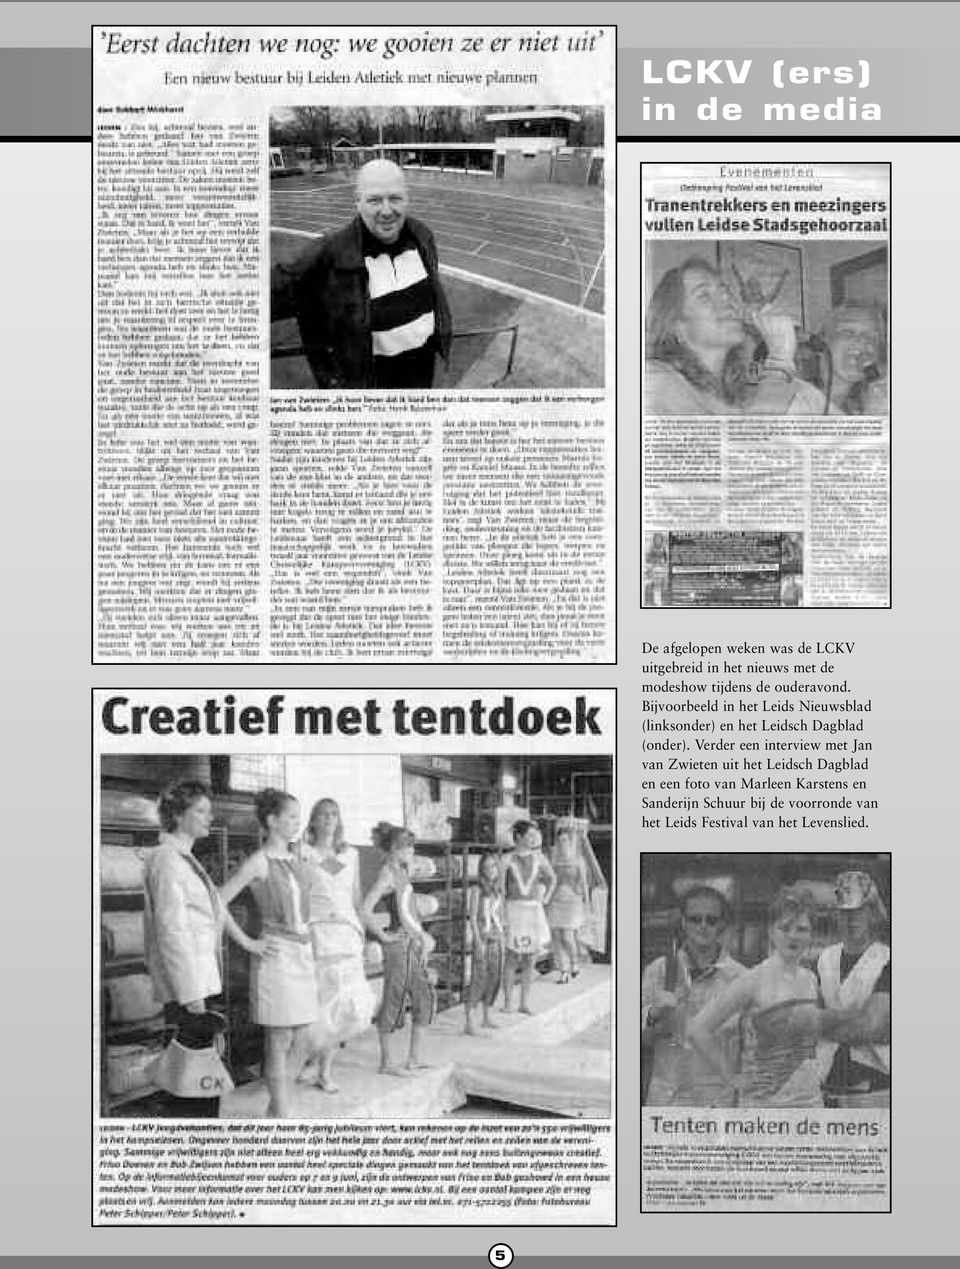 Bijvoorbeeld in het Leids Nieuwsblad (linksonder) en het Leidsch Dagblad (onder).